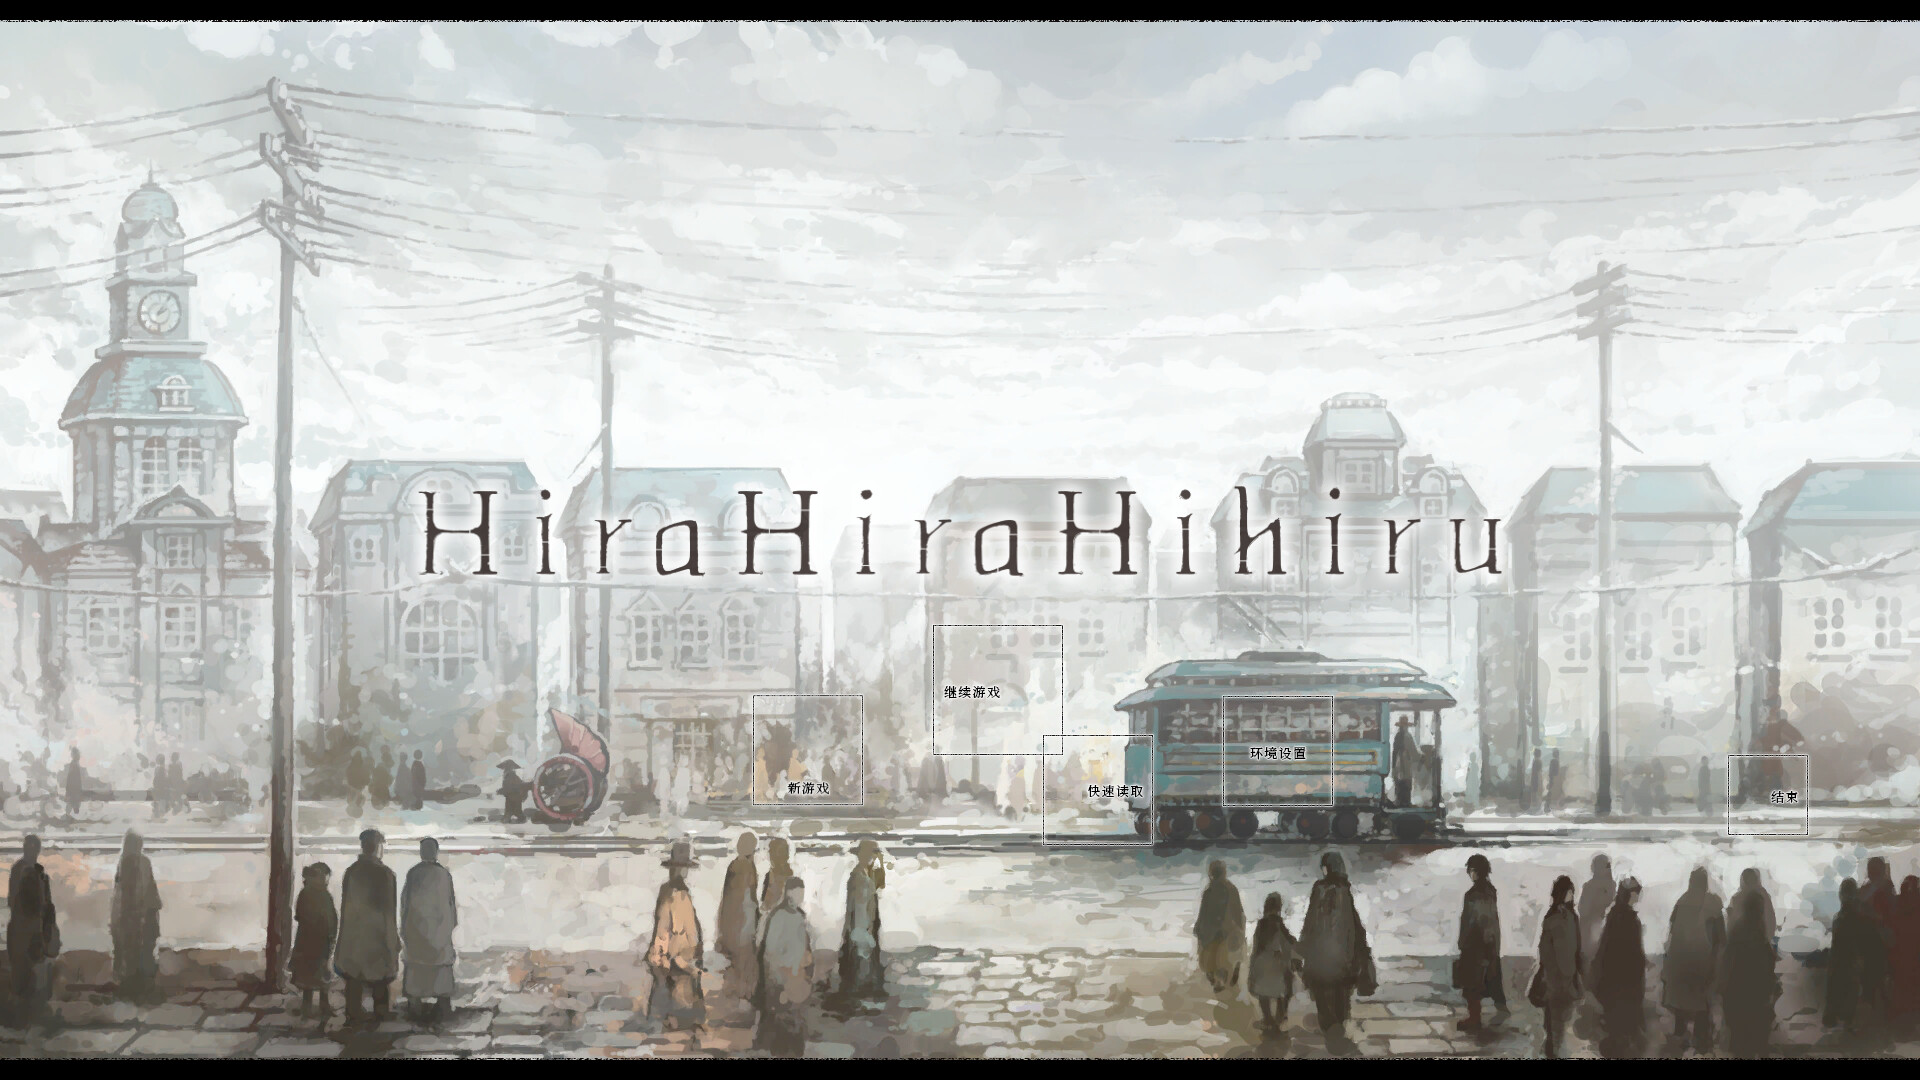 希拉希拉希希鲁|官方中文|Hira Hira Hihiru|ヒラヒラヒヒル插图1